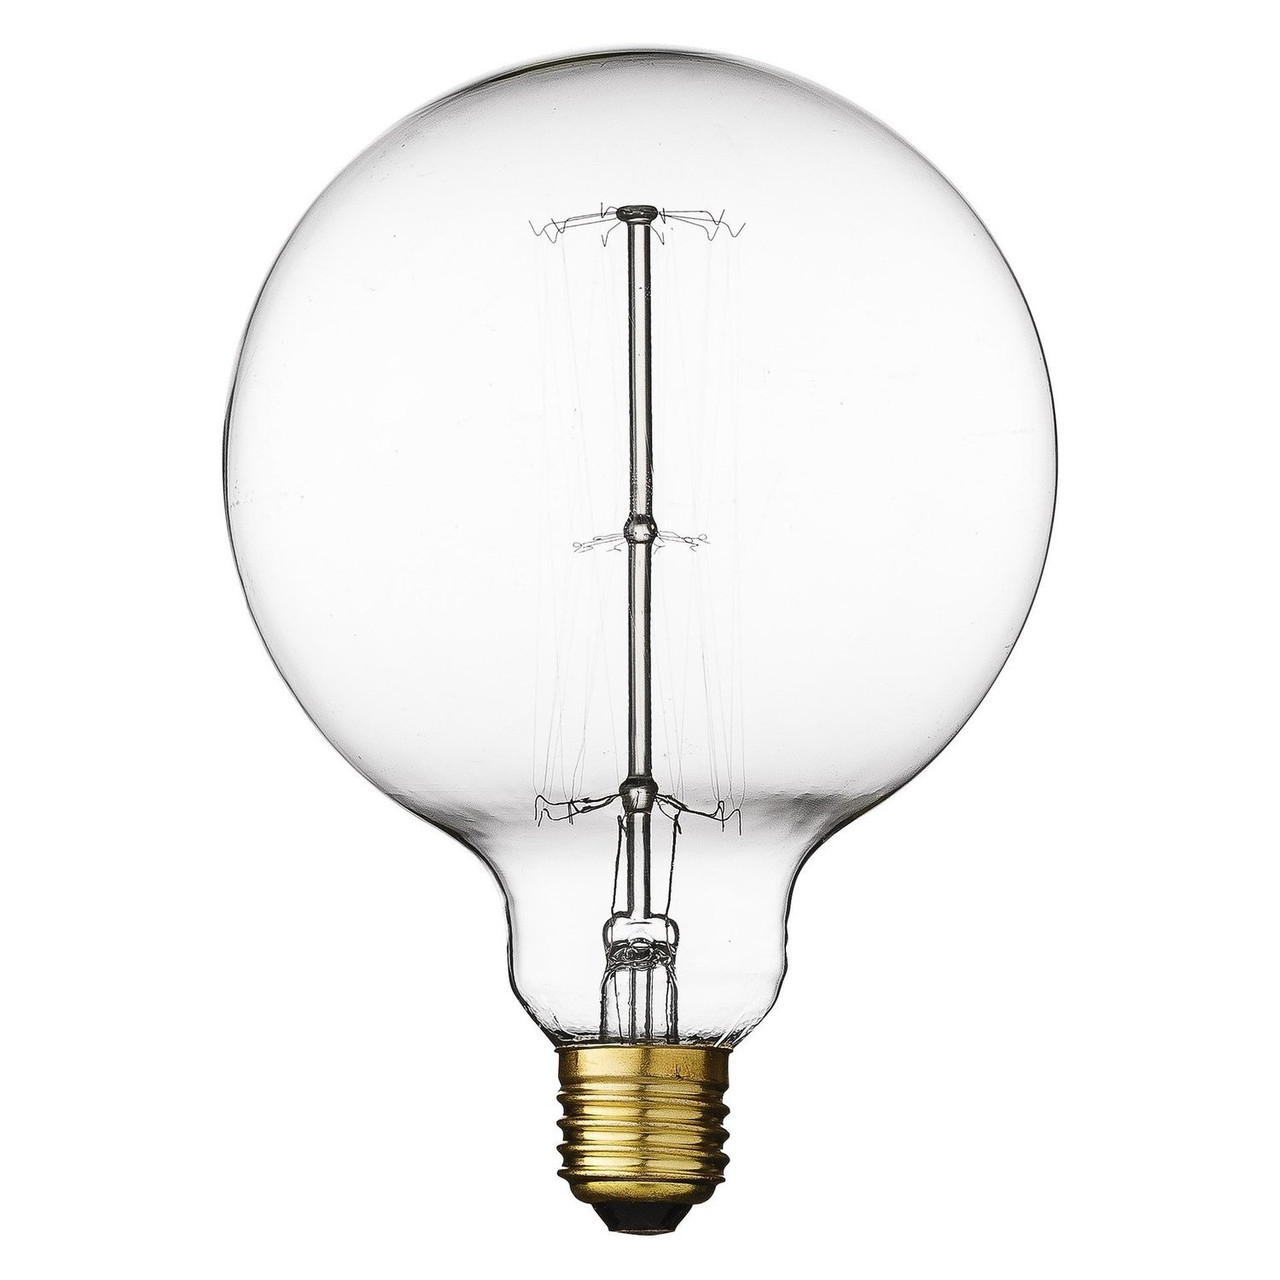 Ретро лампа накаливания Эдисона, лампа светодиодная Эдисона 40 ватт,  лампа ретро-стиля, винтажная лампа., фото 1